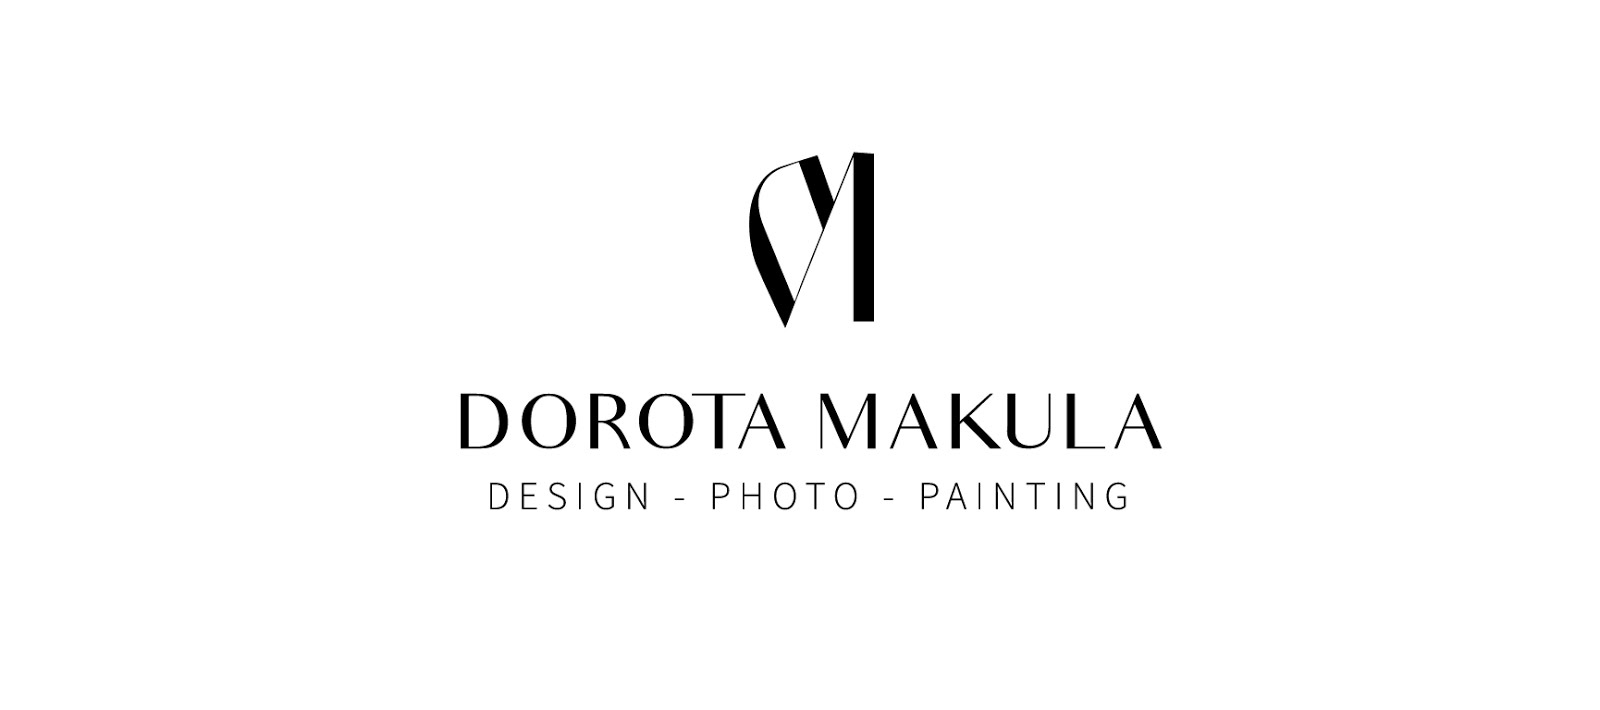 Dorota Makula DESIGN